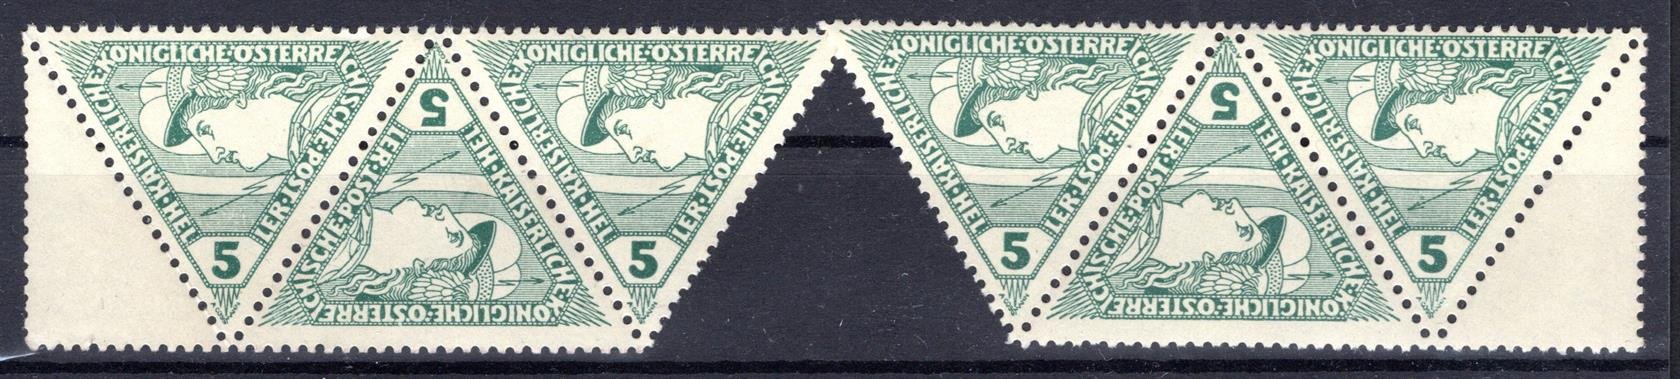 Rakousko - Mi. 218, 2 x třípáska, trojúhelník zelený 5 h, s 1/2 kuponem vlevo + vpravo